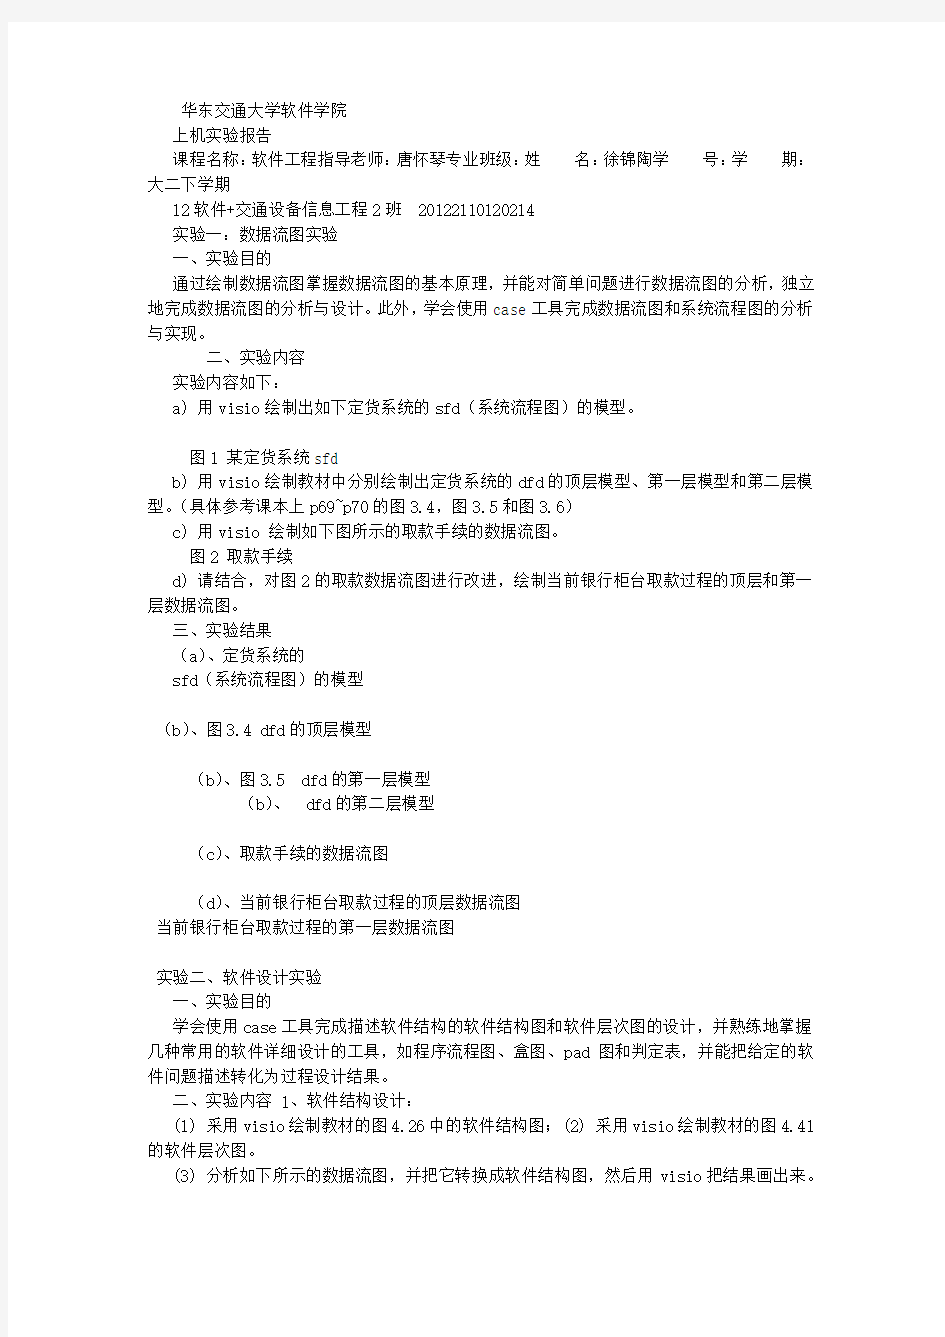 华东交通大学软件工程实验报告 (7000字)